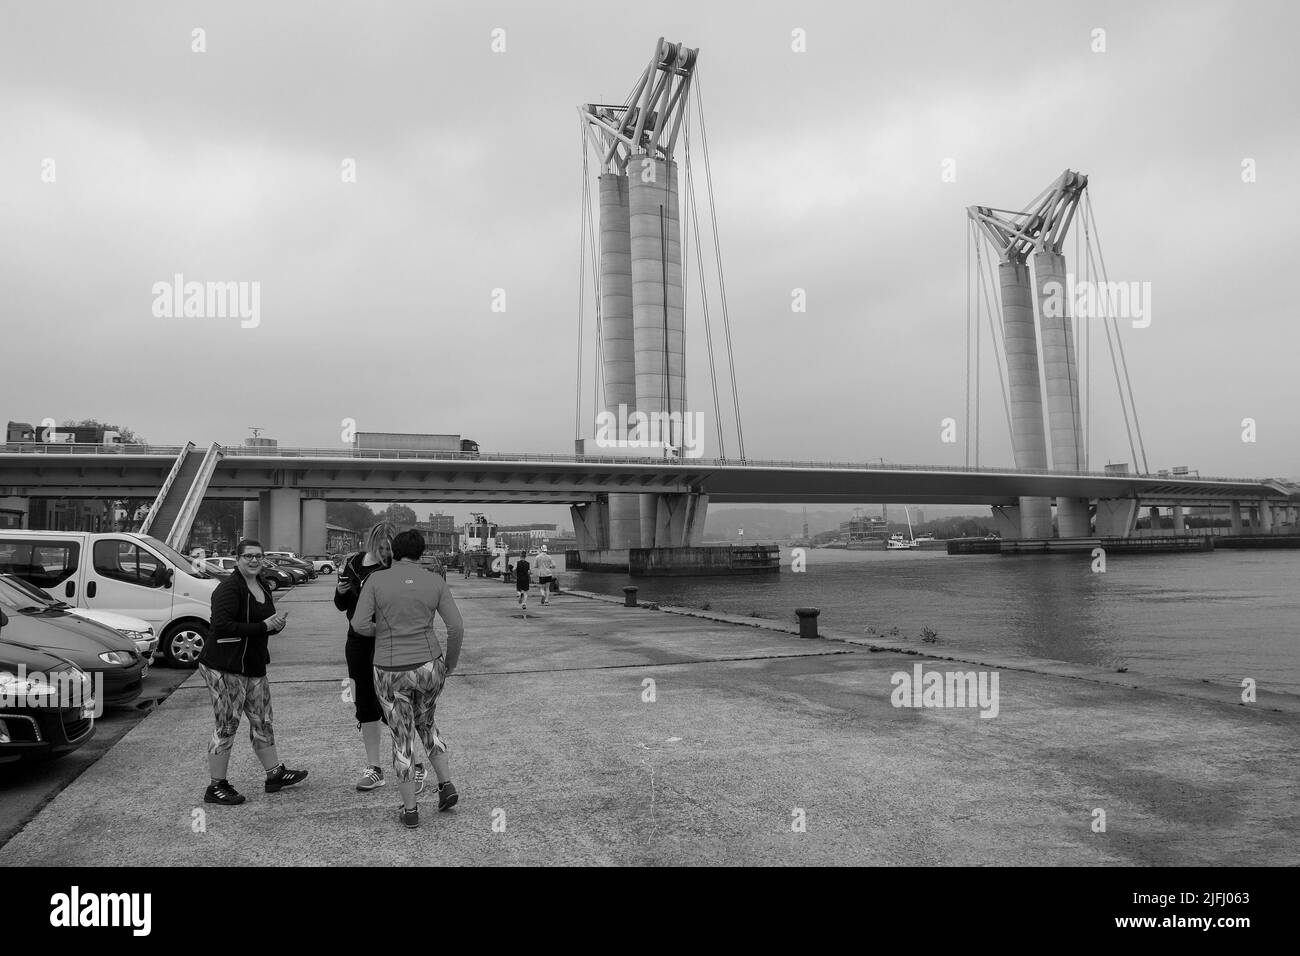 05-12-2016 Rouen, Frankreich. Gruppe von Läuferinnen am Ufer der seine und der Brücke Goustave Flaubert in Rouen. Lastwagen bewegen sich auf der Brücke Stockfoto